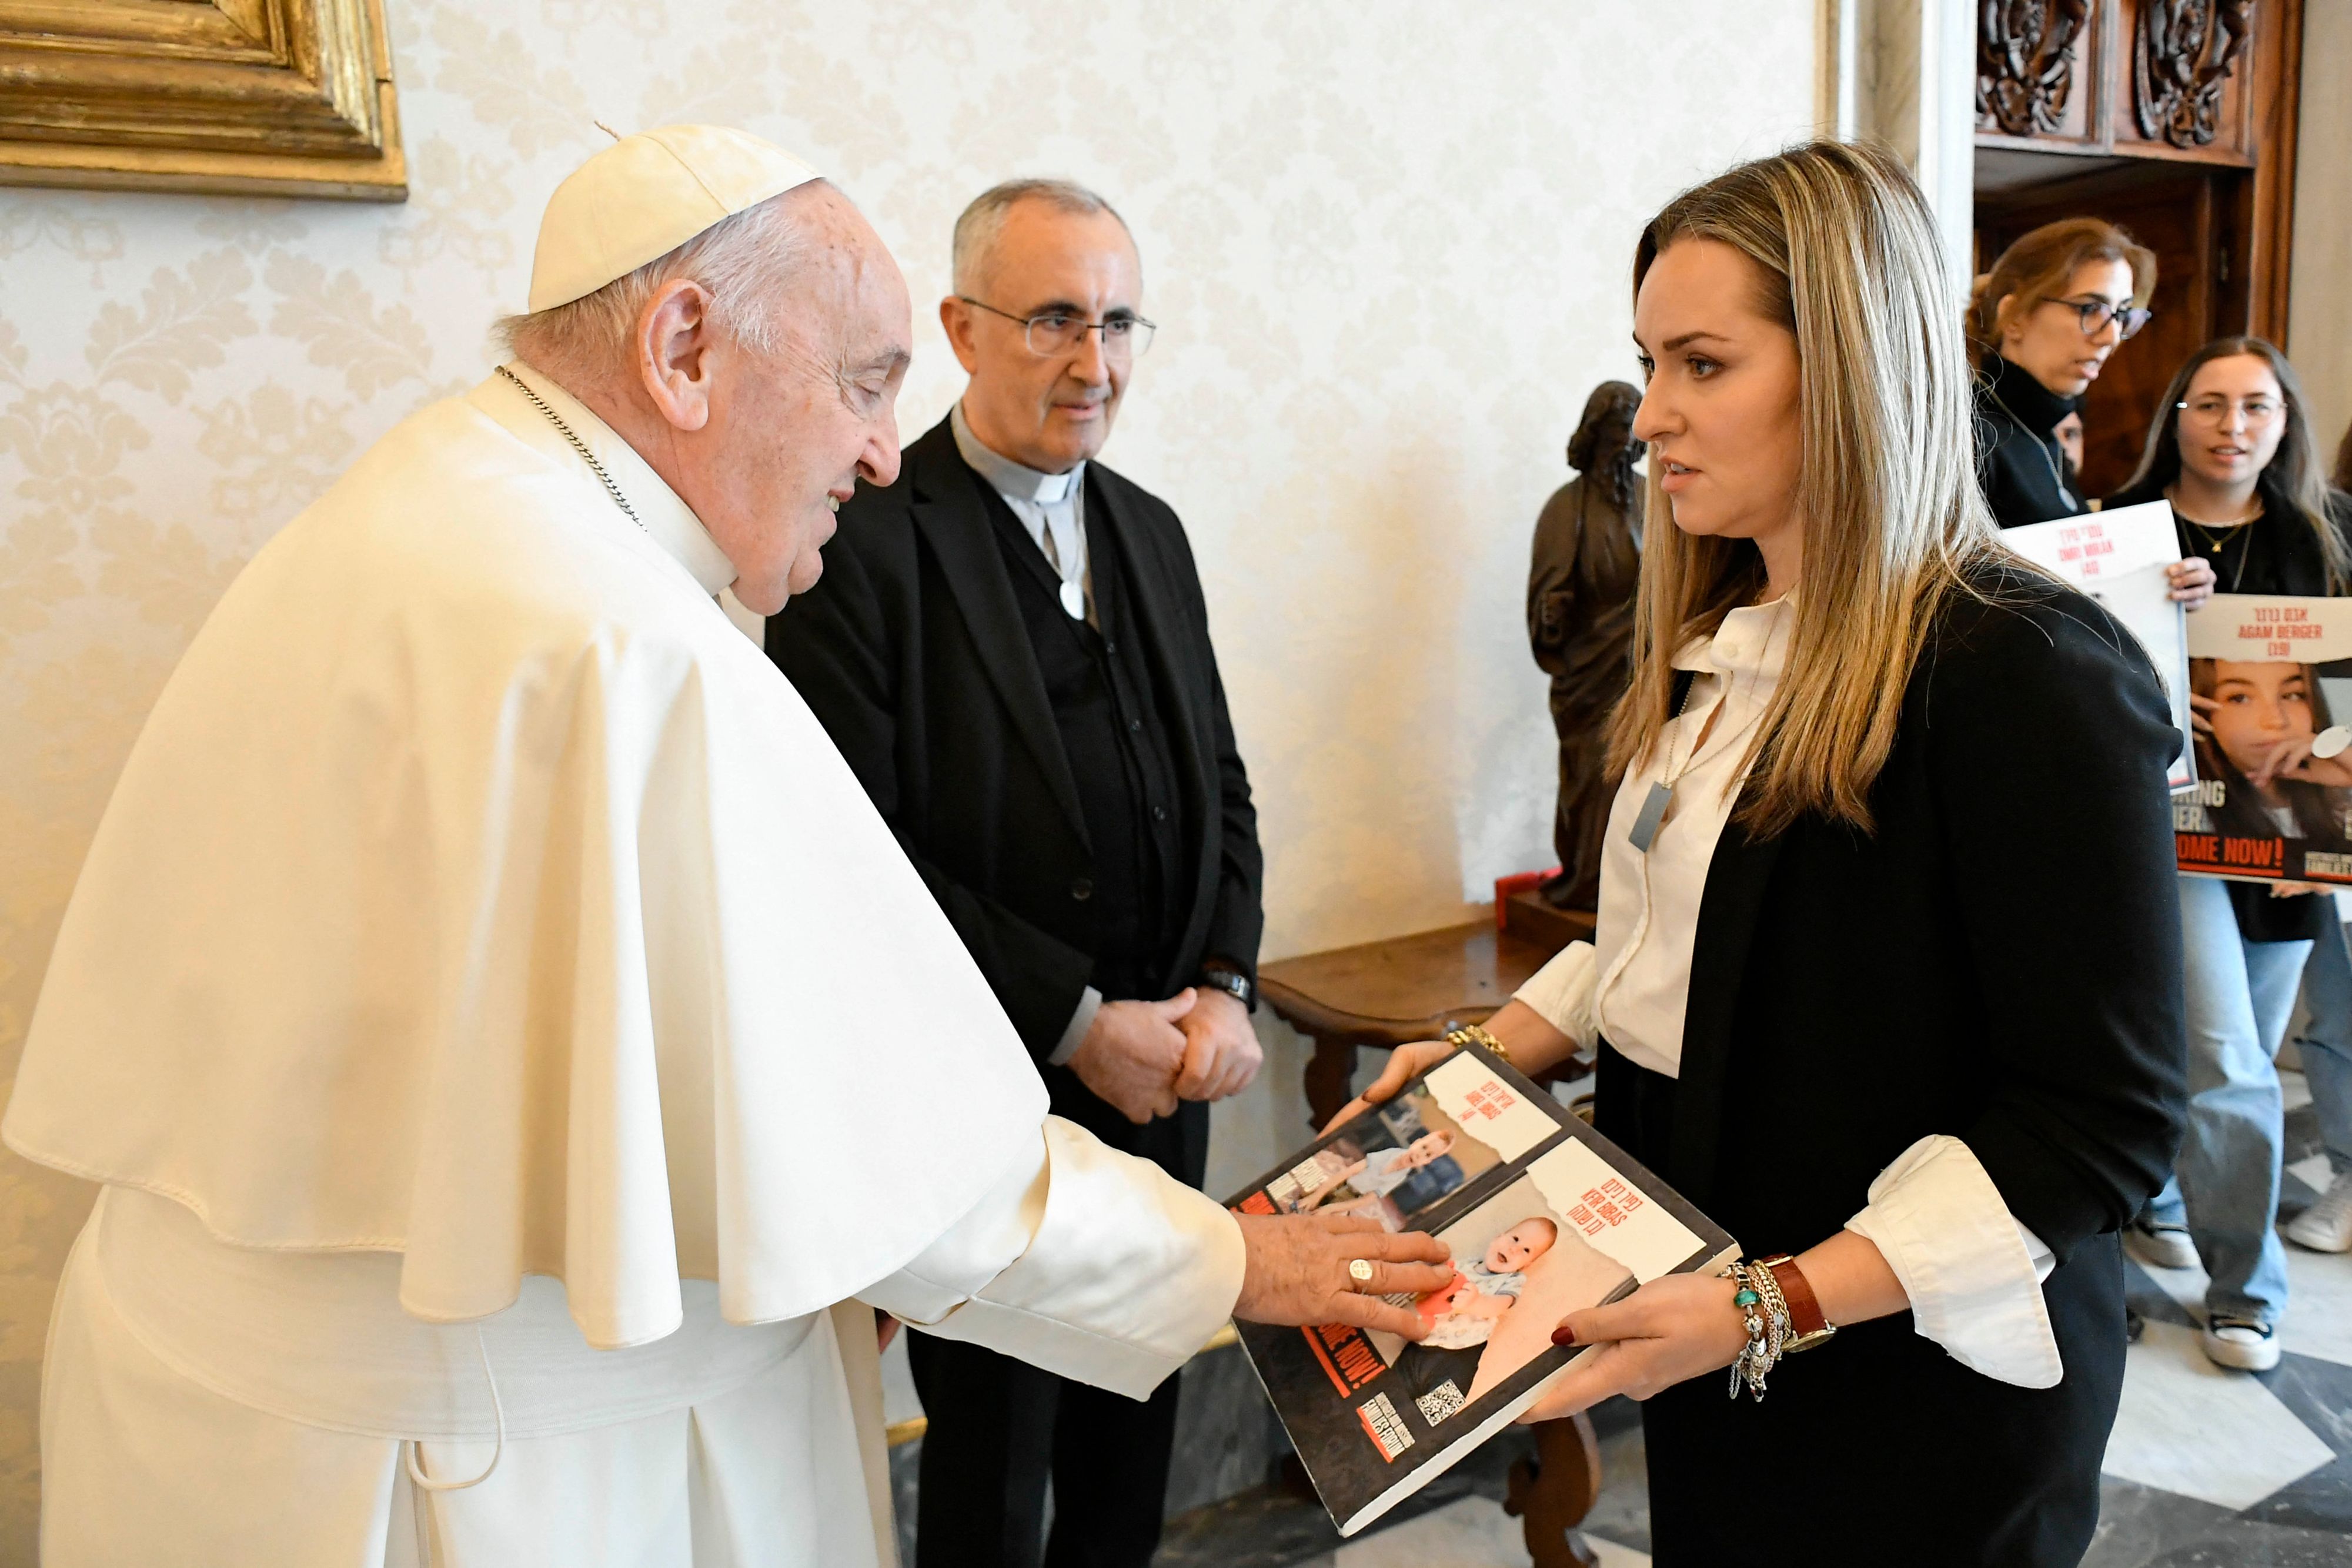 Le pape rencontre des familles d'otages israéliens